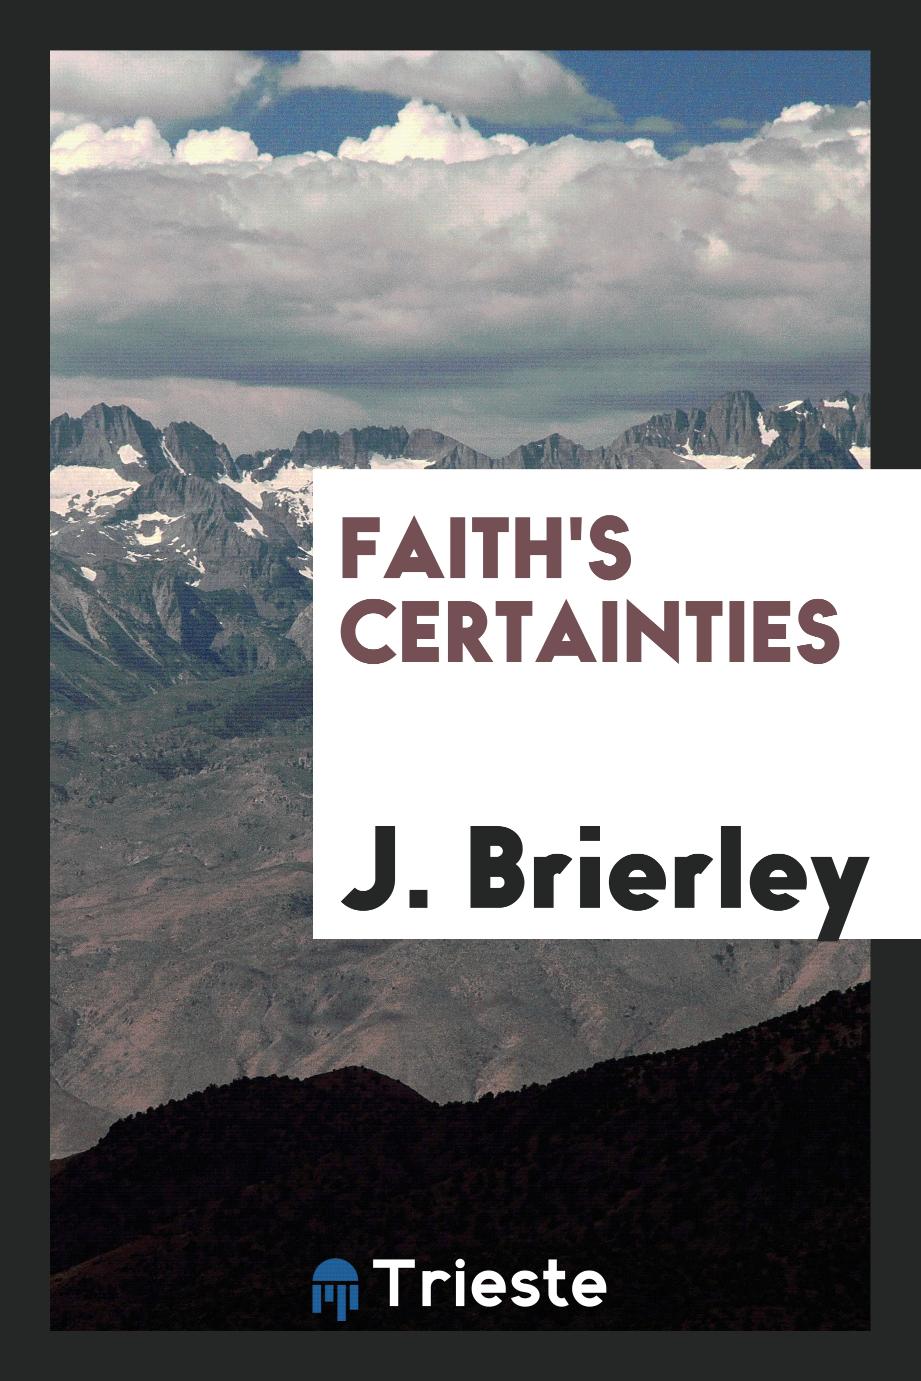 Faith's certainties